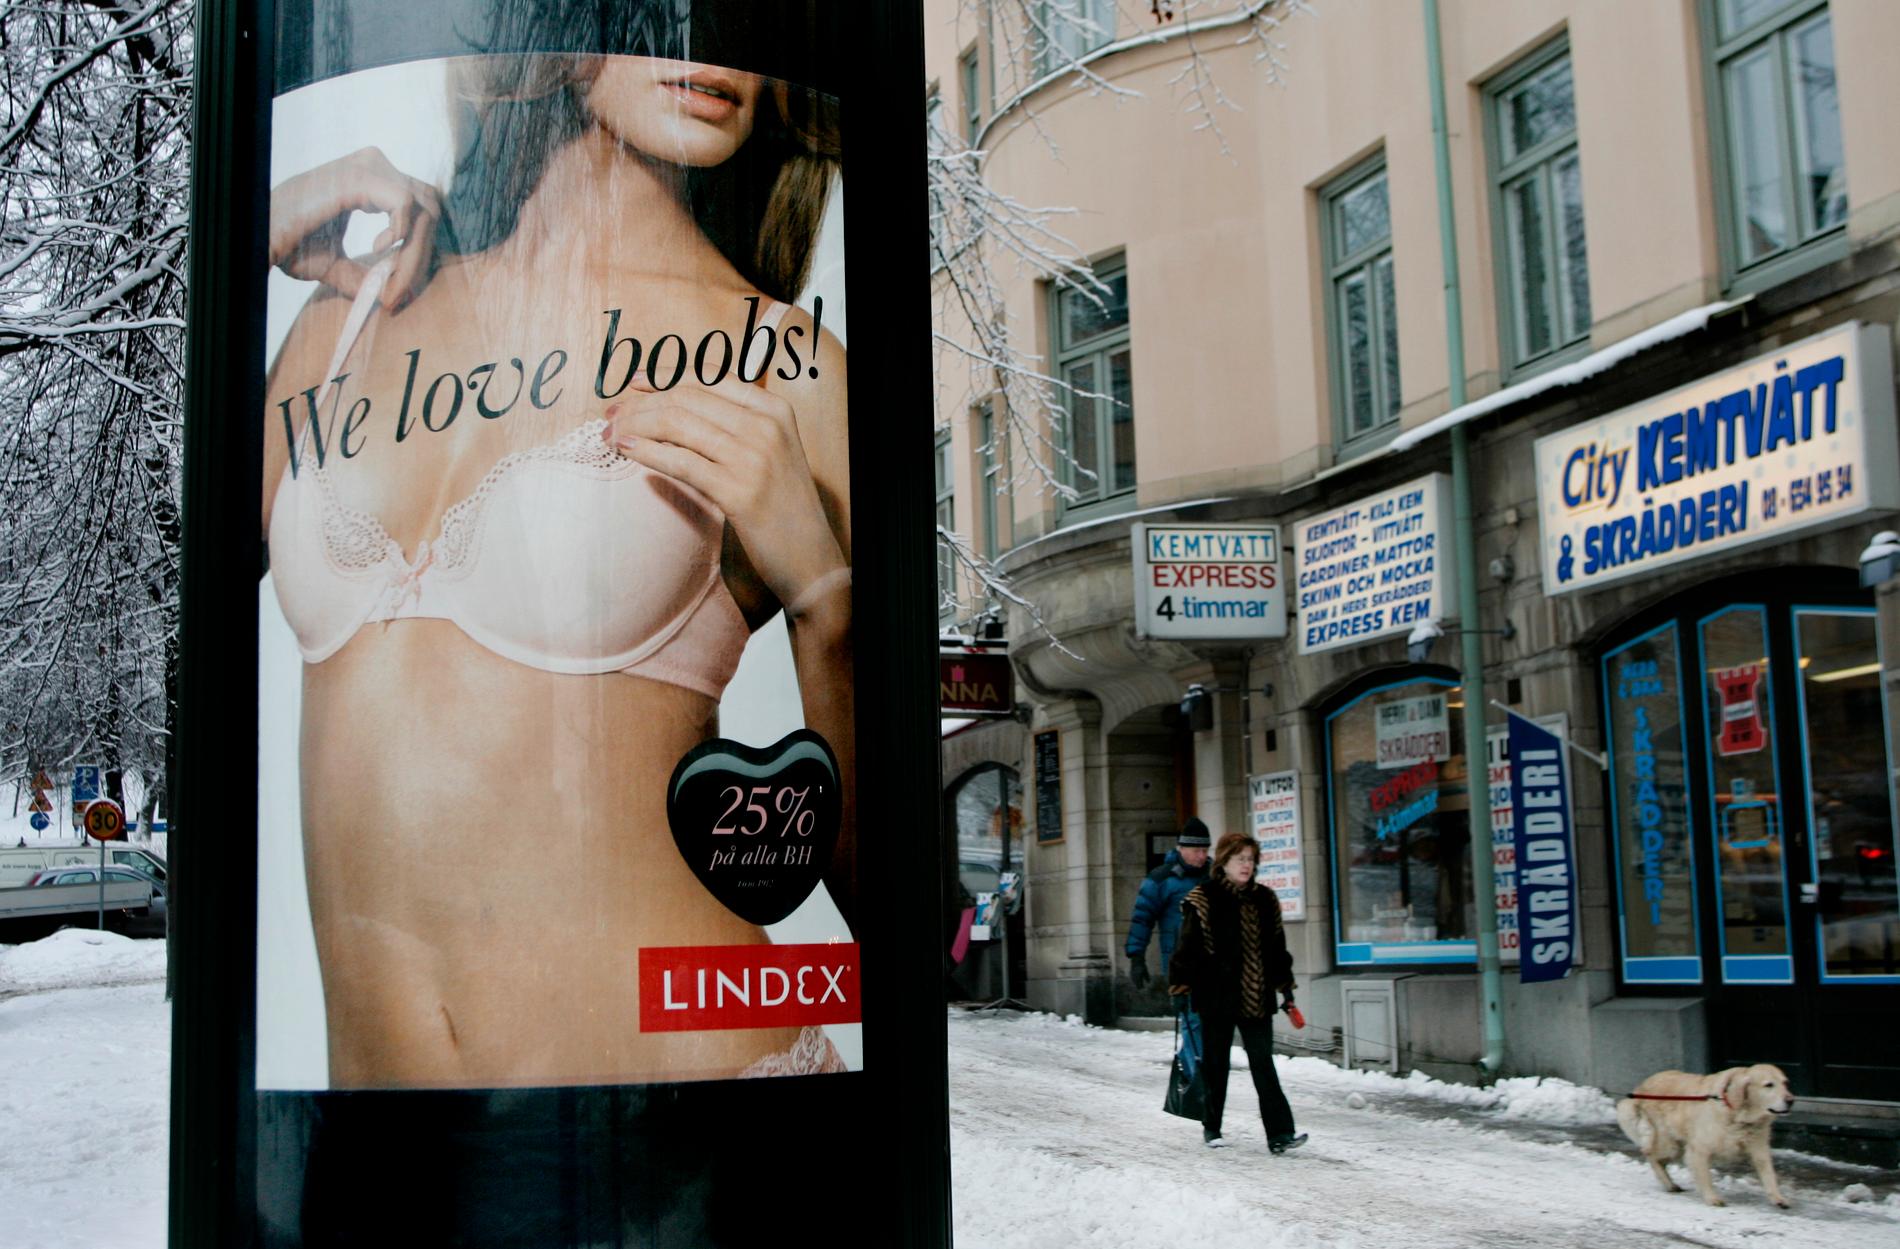 Lindex underkläder är populära bland många kvinnor. Och tydligen bland vissa män också. 